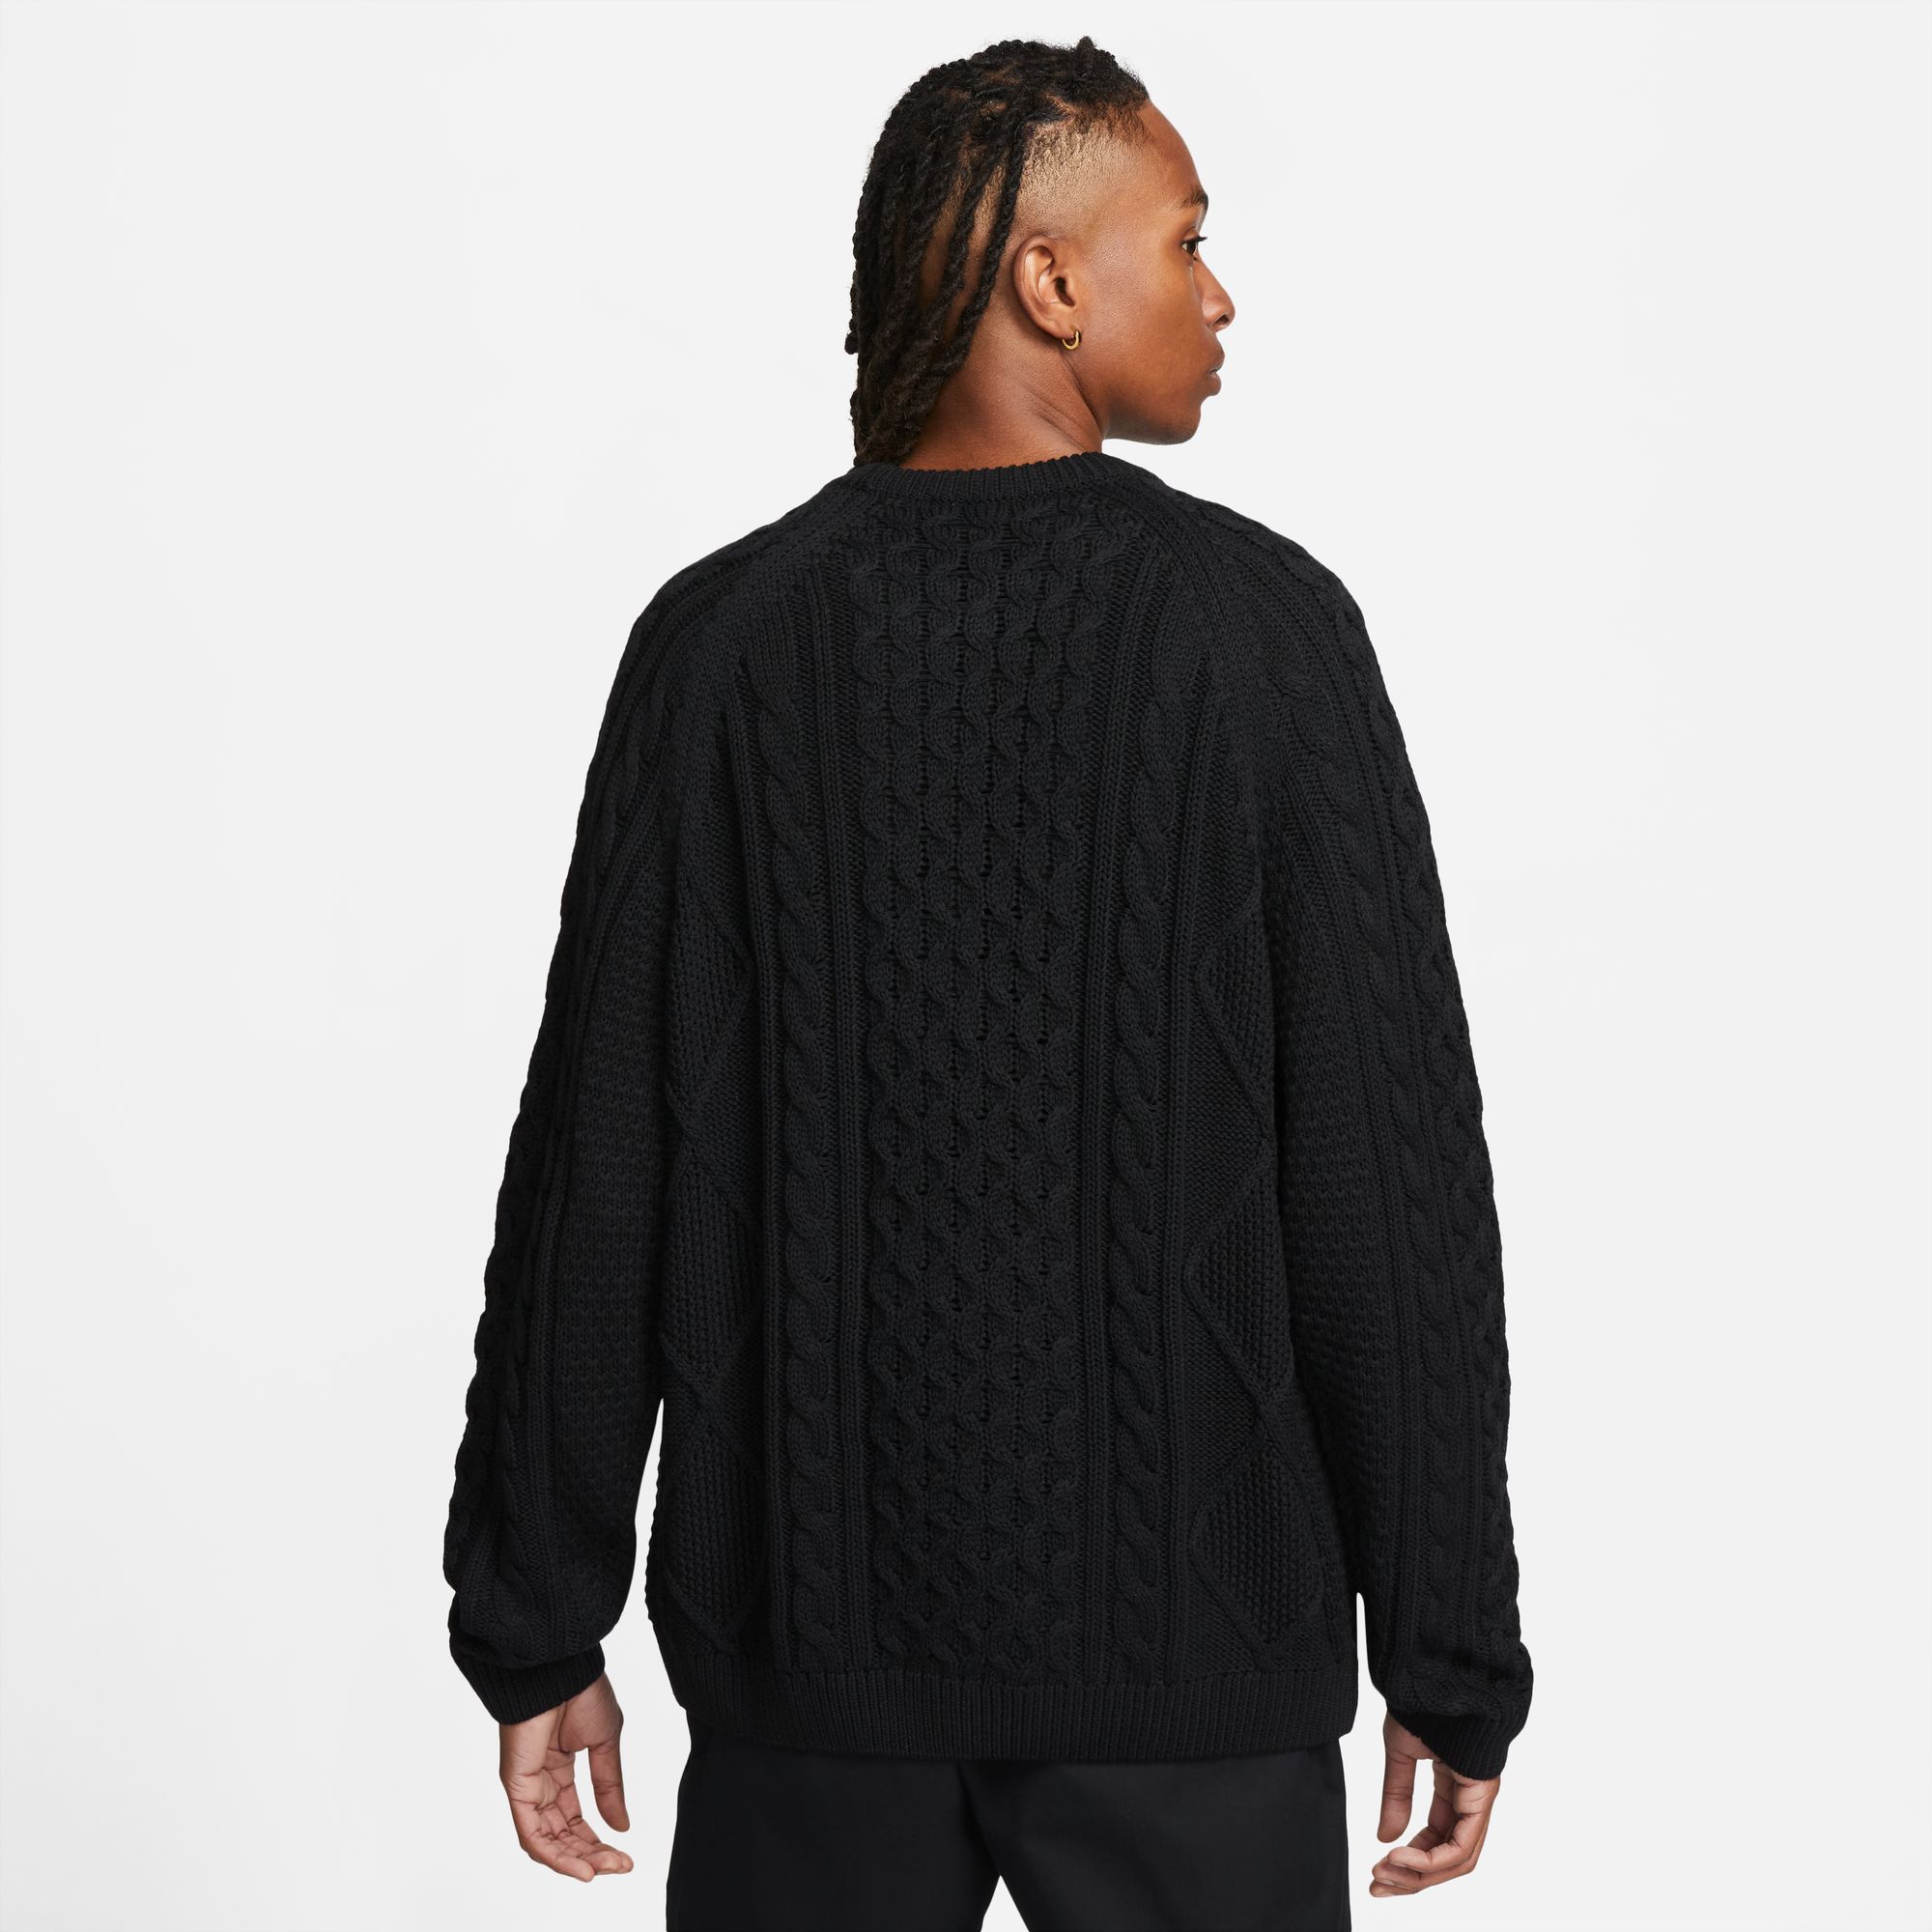 Nike SB Men's Cable Knit Sweater Black06